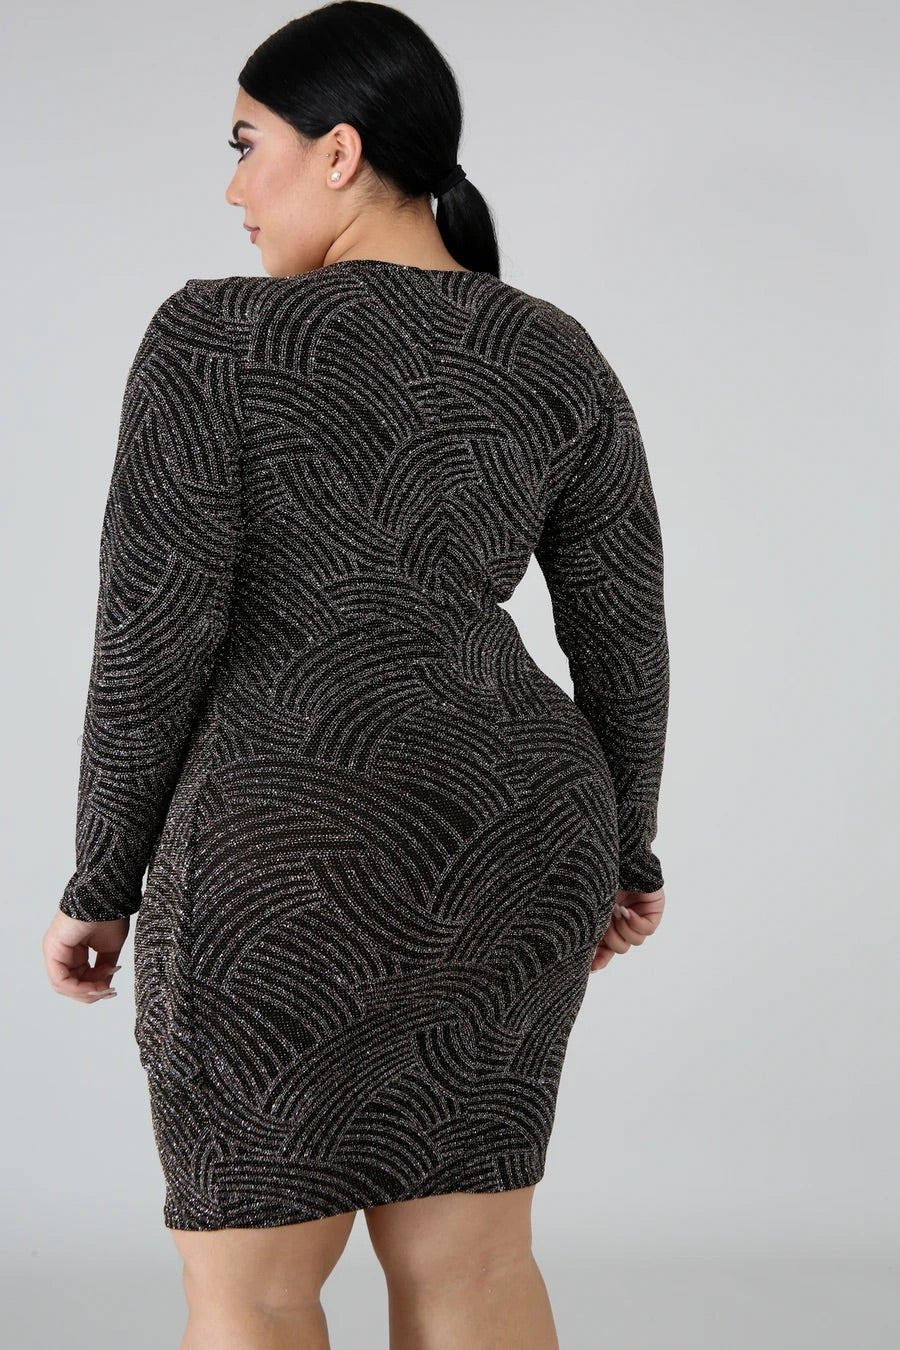 Glittery Swerve Midi Dress Black (Curvy) - Ali’s Couture 